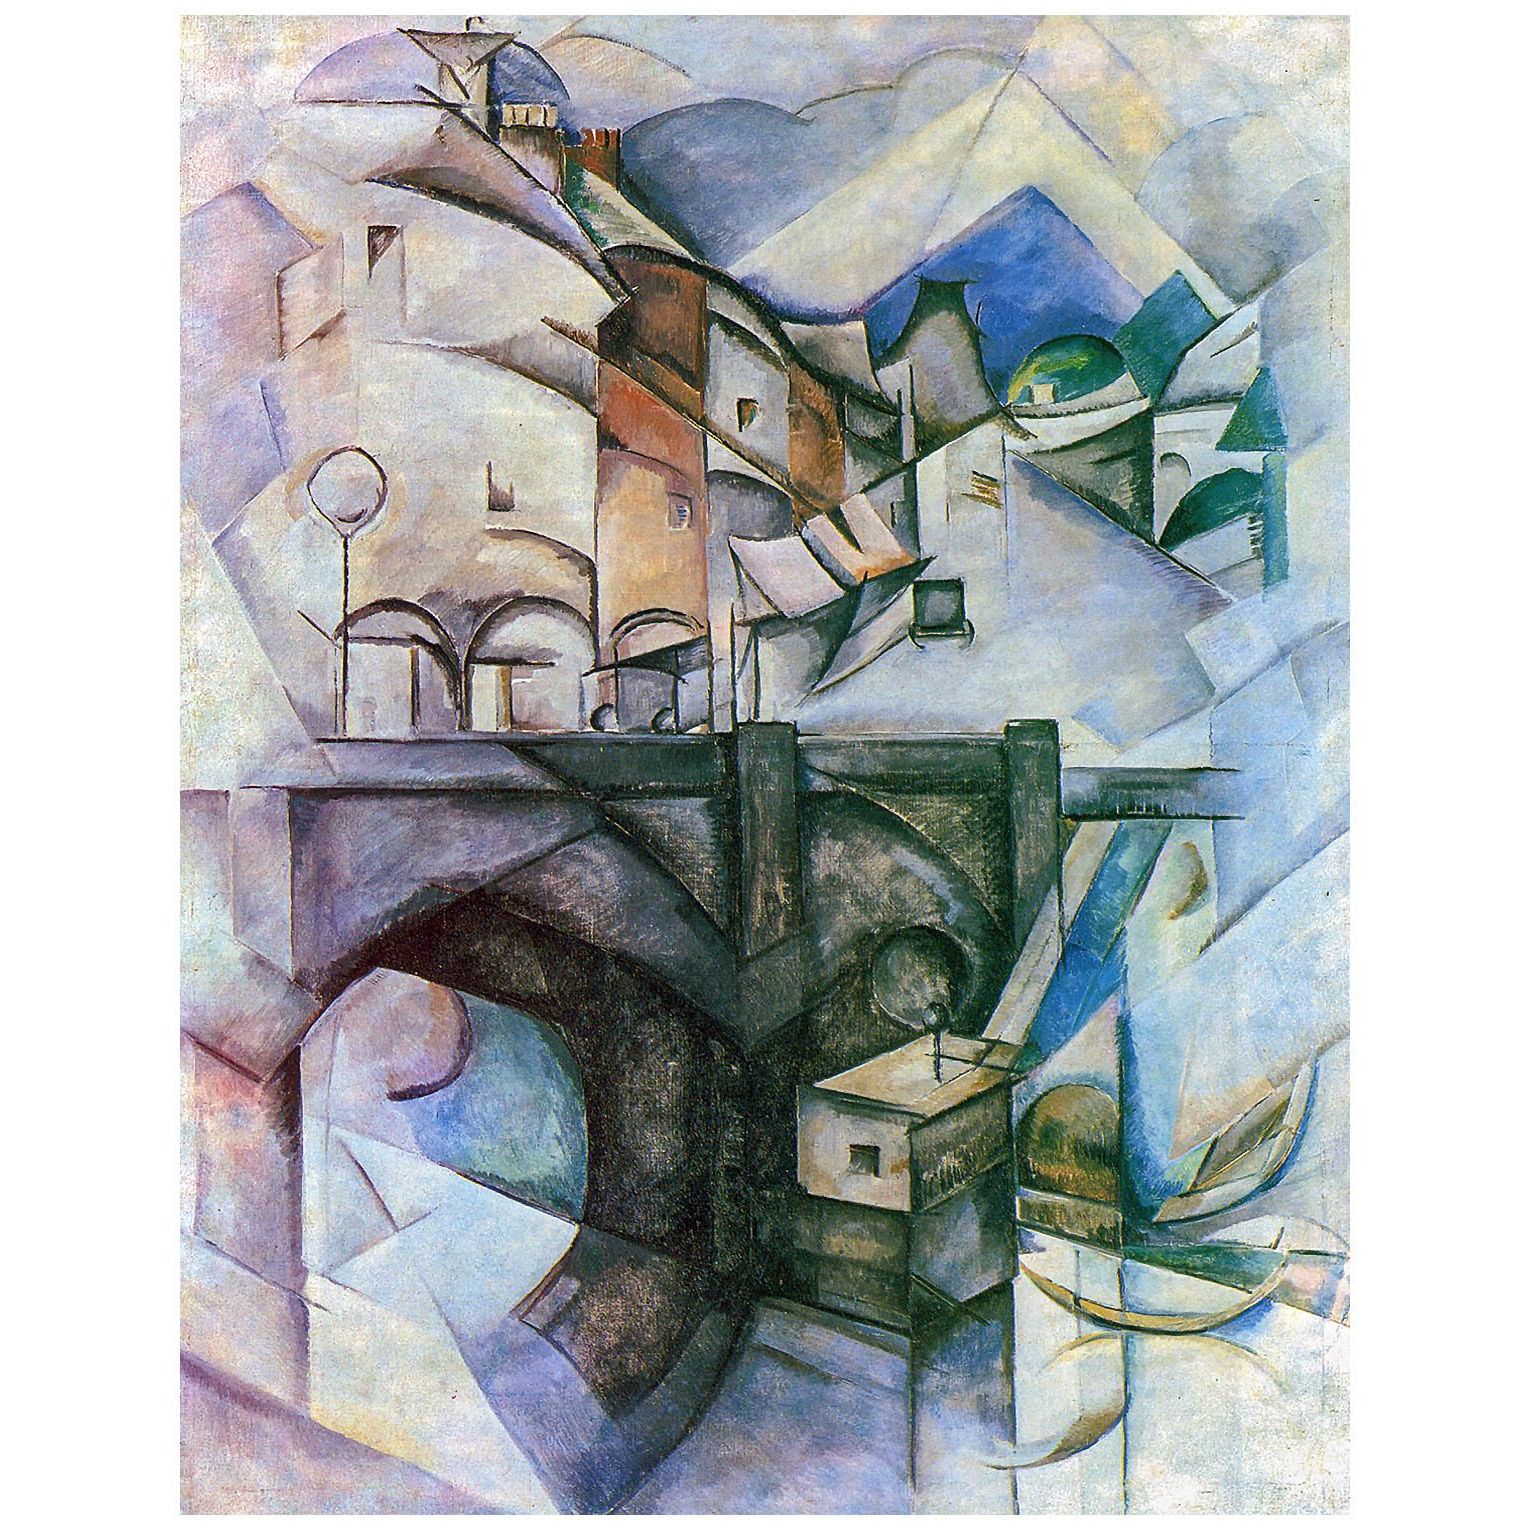 Александра Экстер. Сервский мост. 1911-1912. Киевская картинная галерея